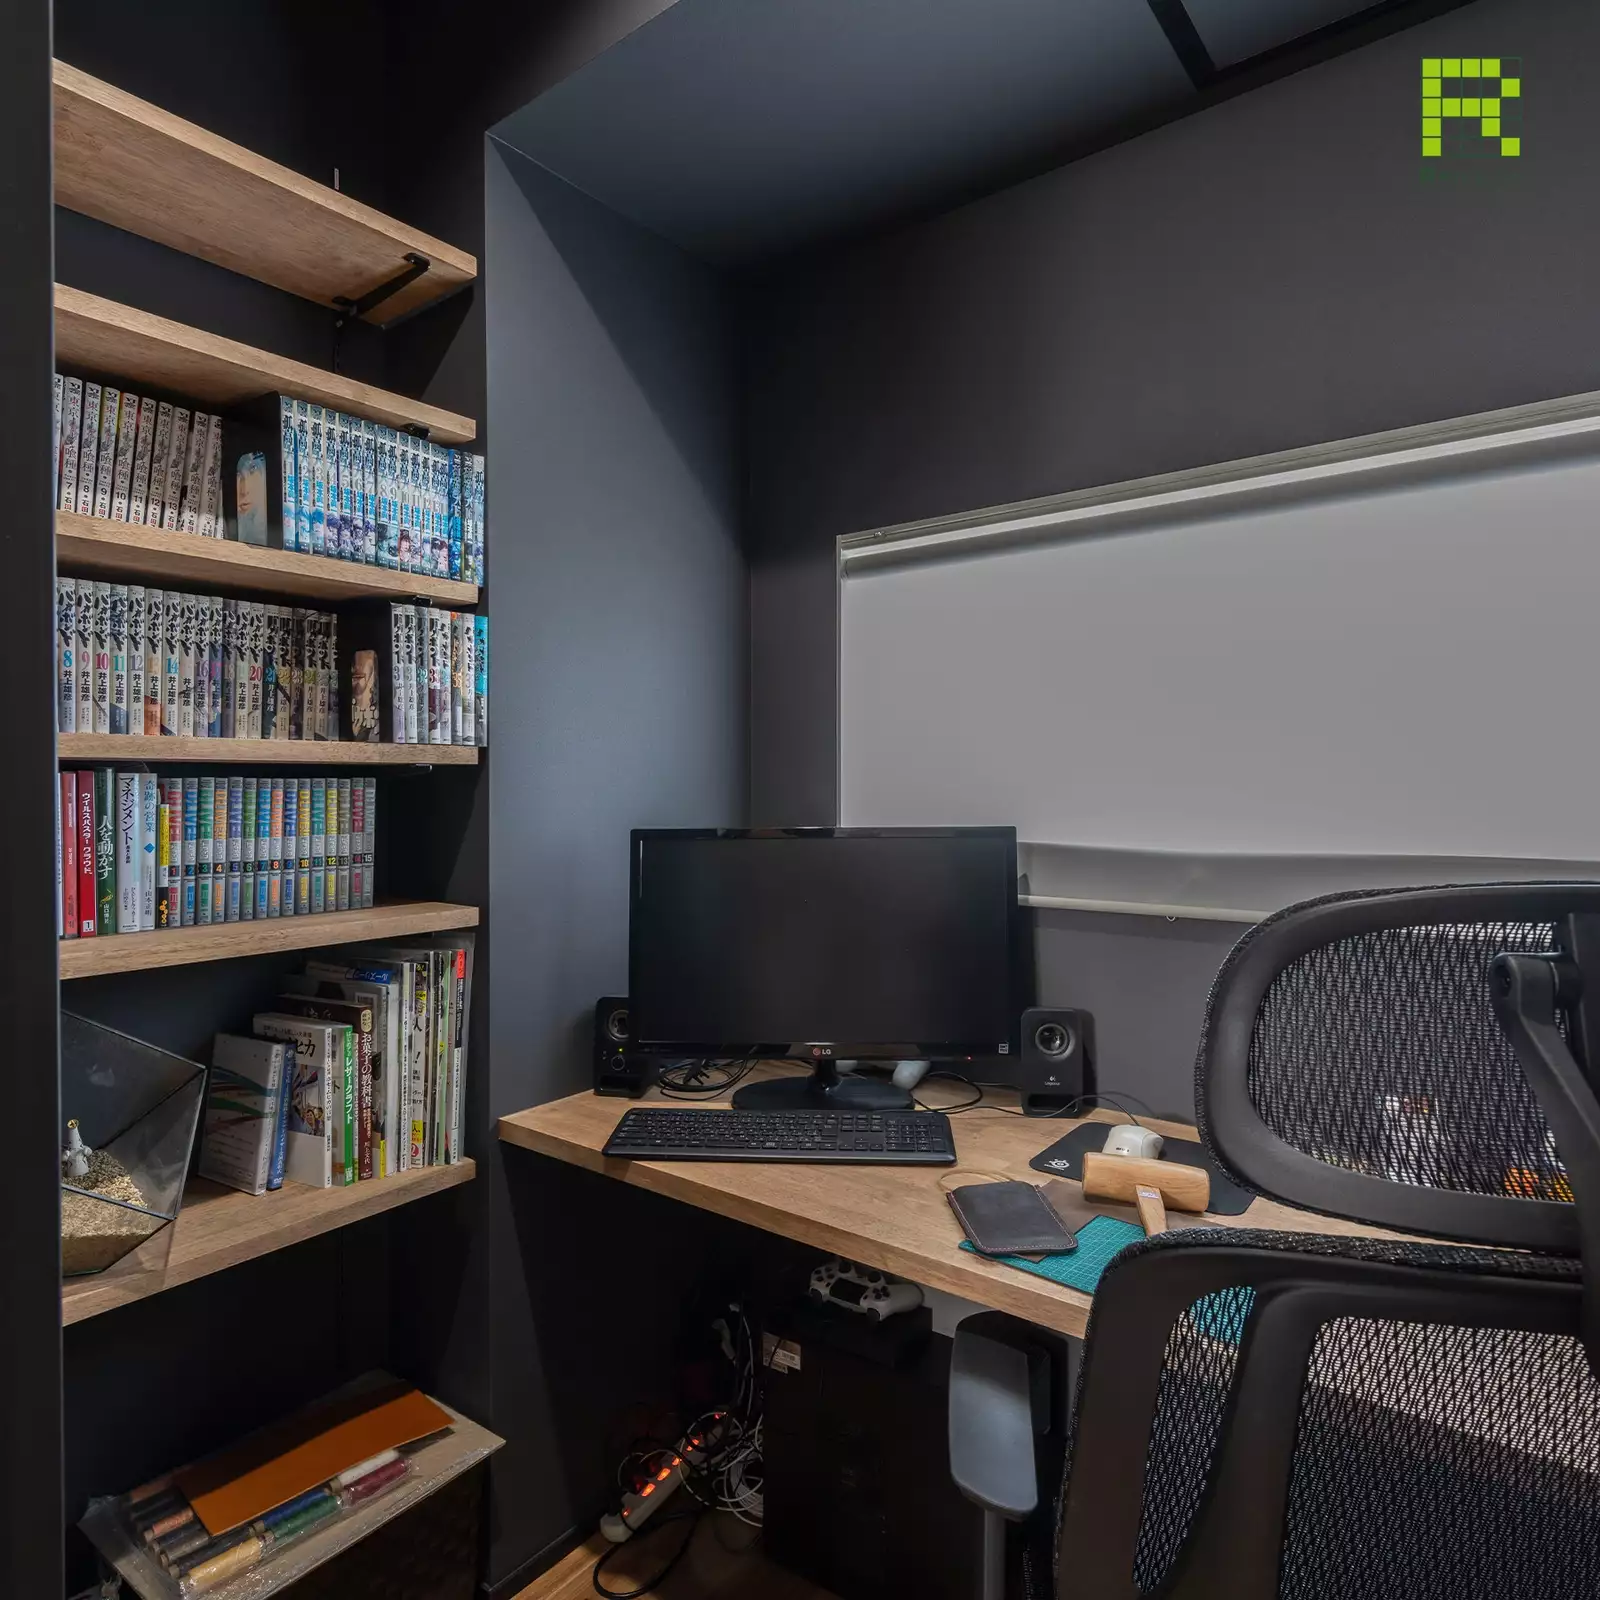 R+houseの物件の書斎の写真です。黒で統一された落ち着く空間。